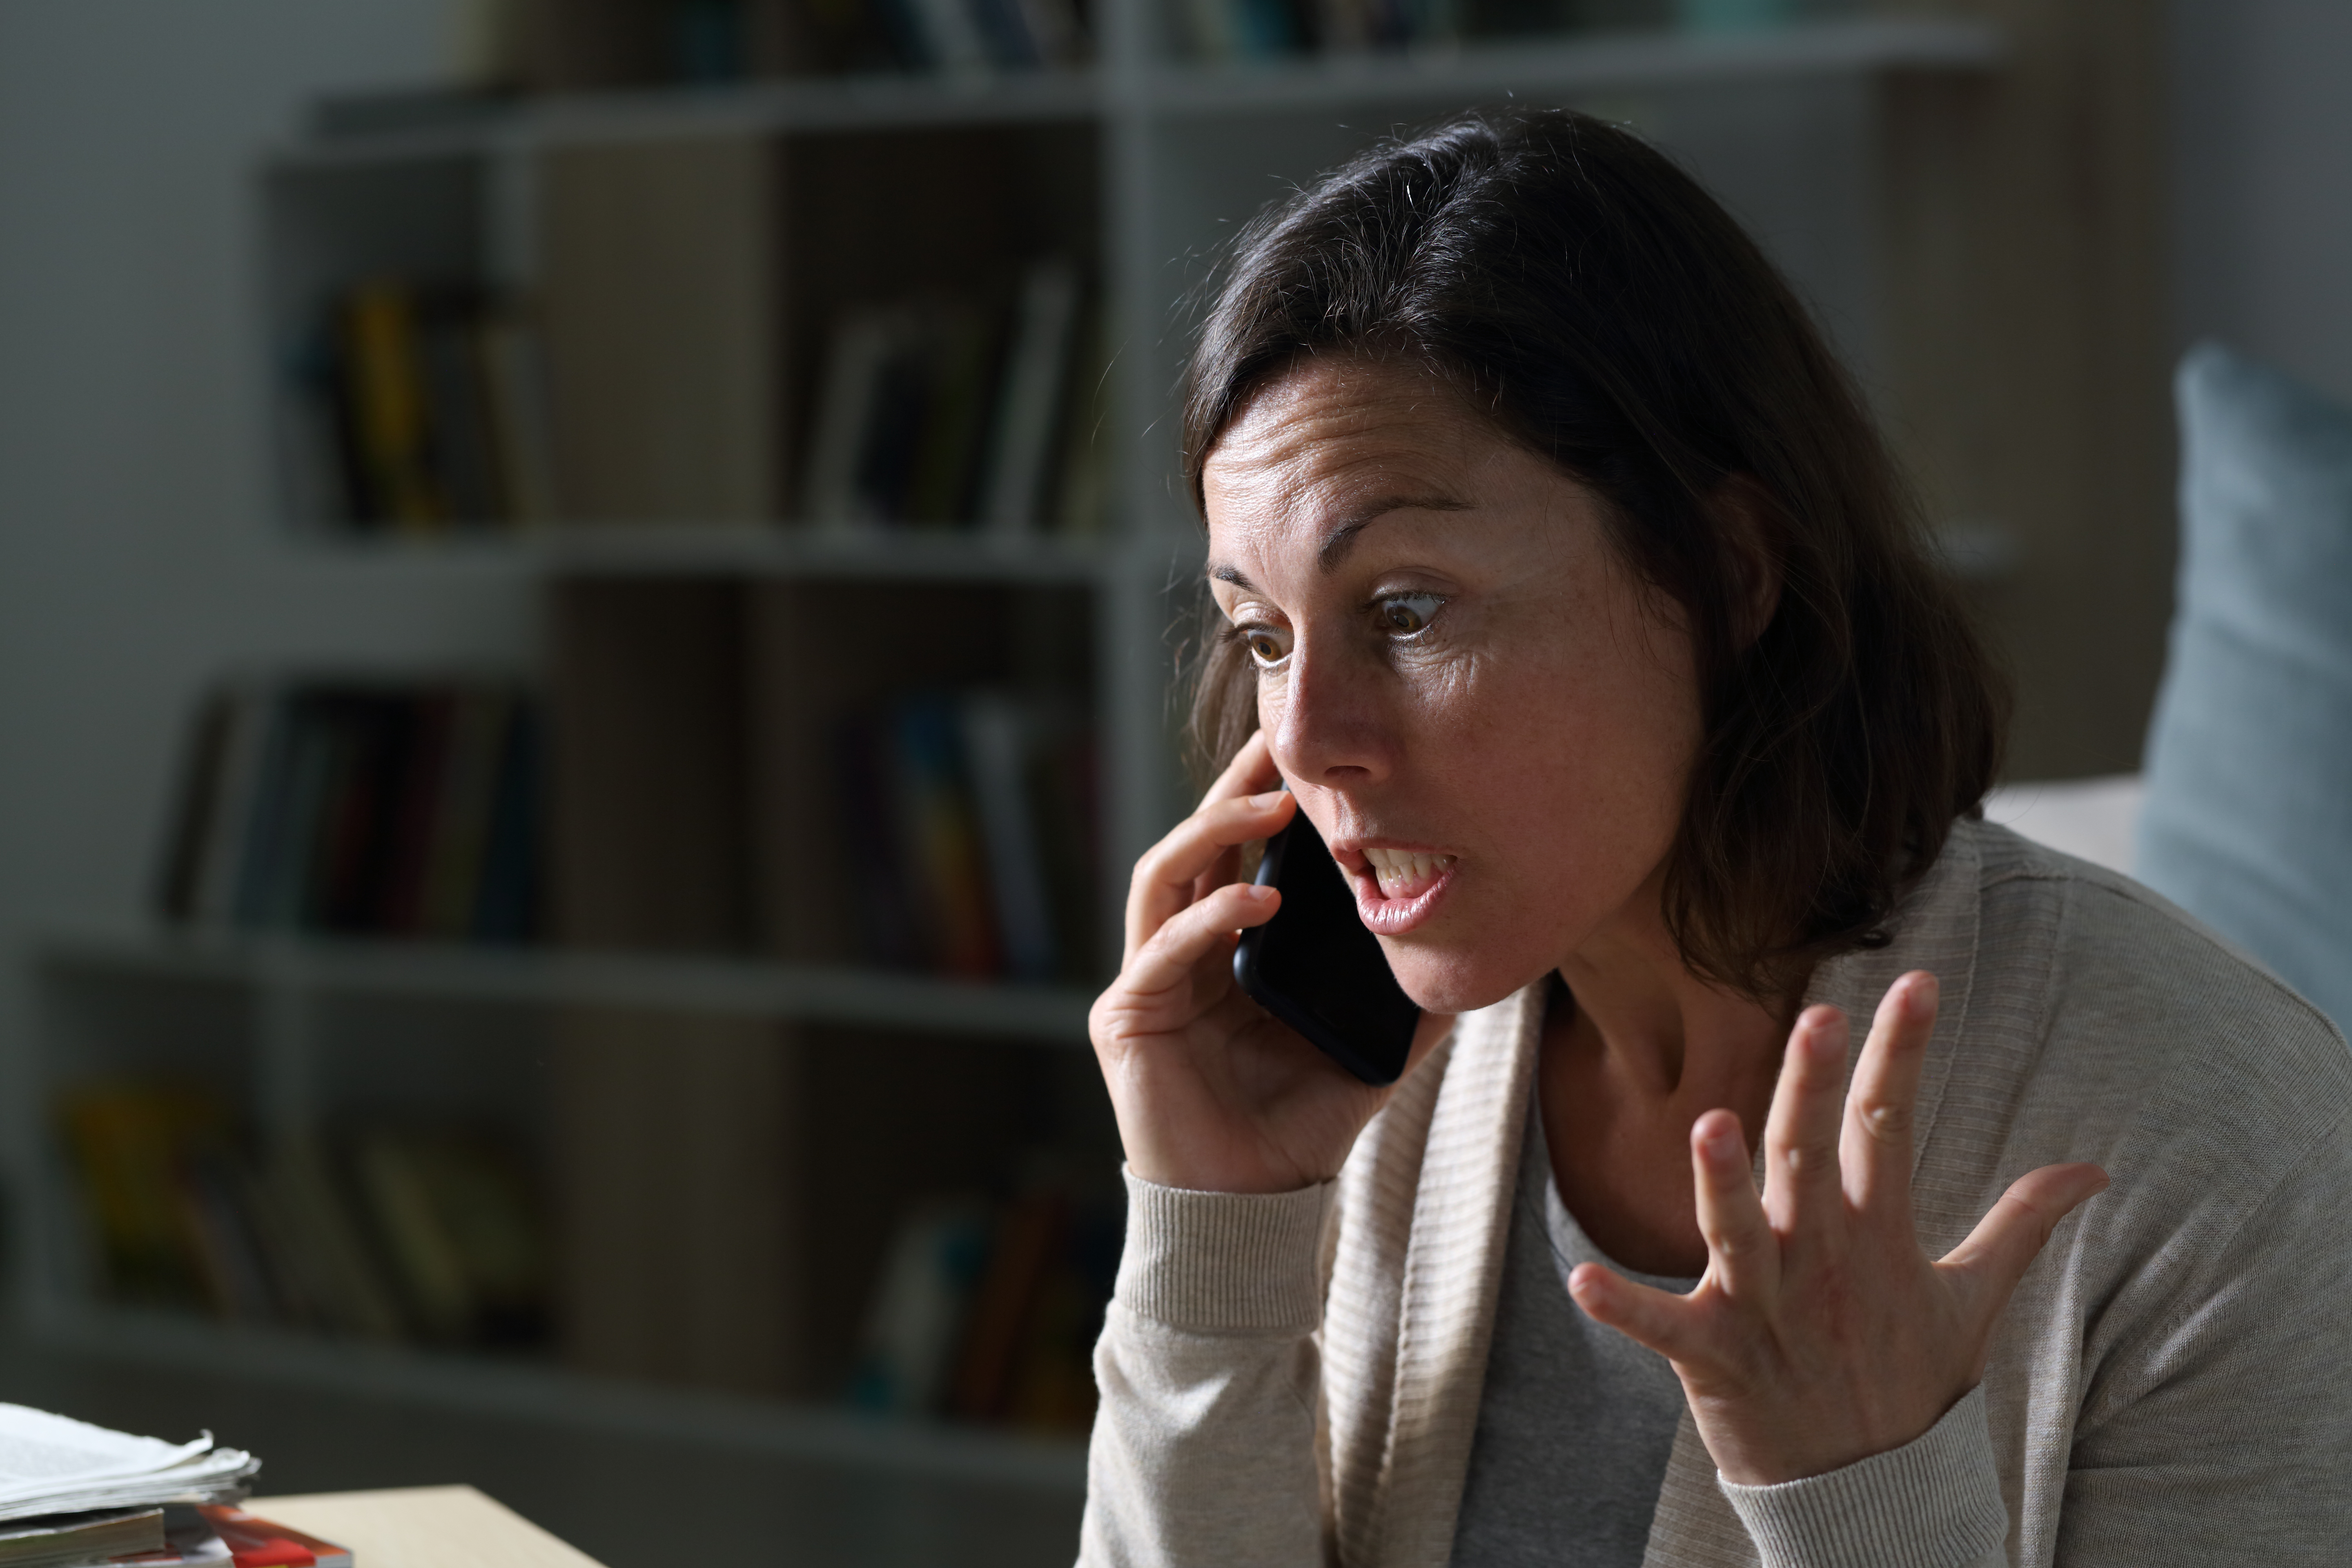 Uma mulher irritada em uma ligação | Fonte: Shutterstock